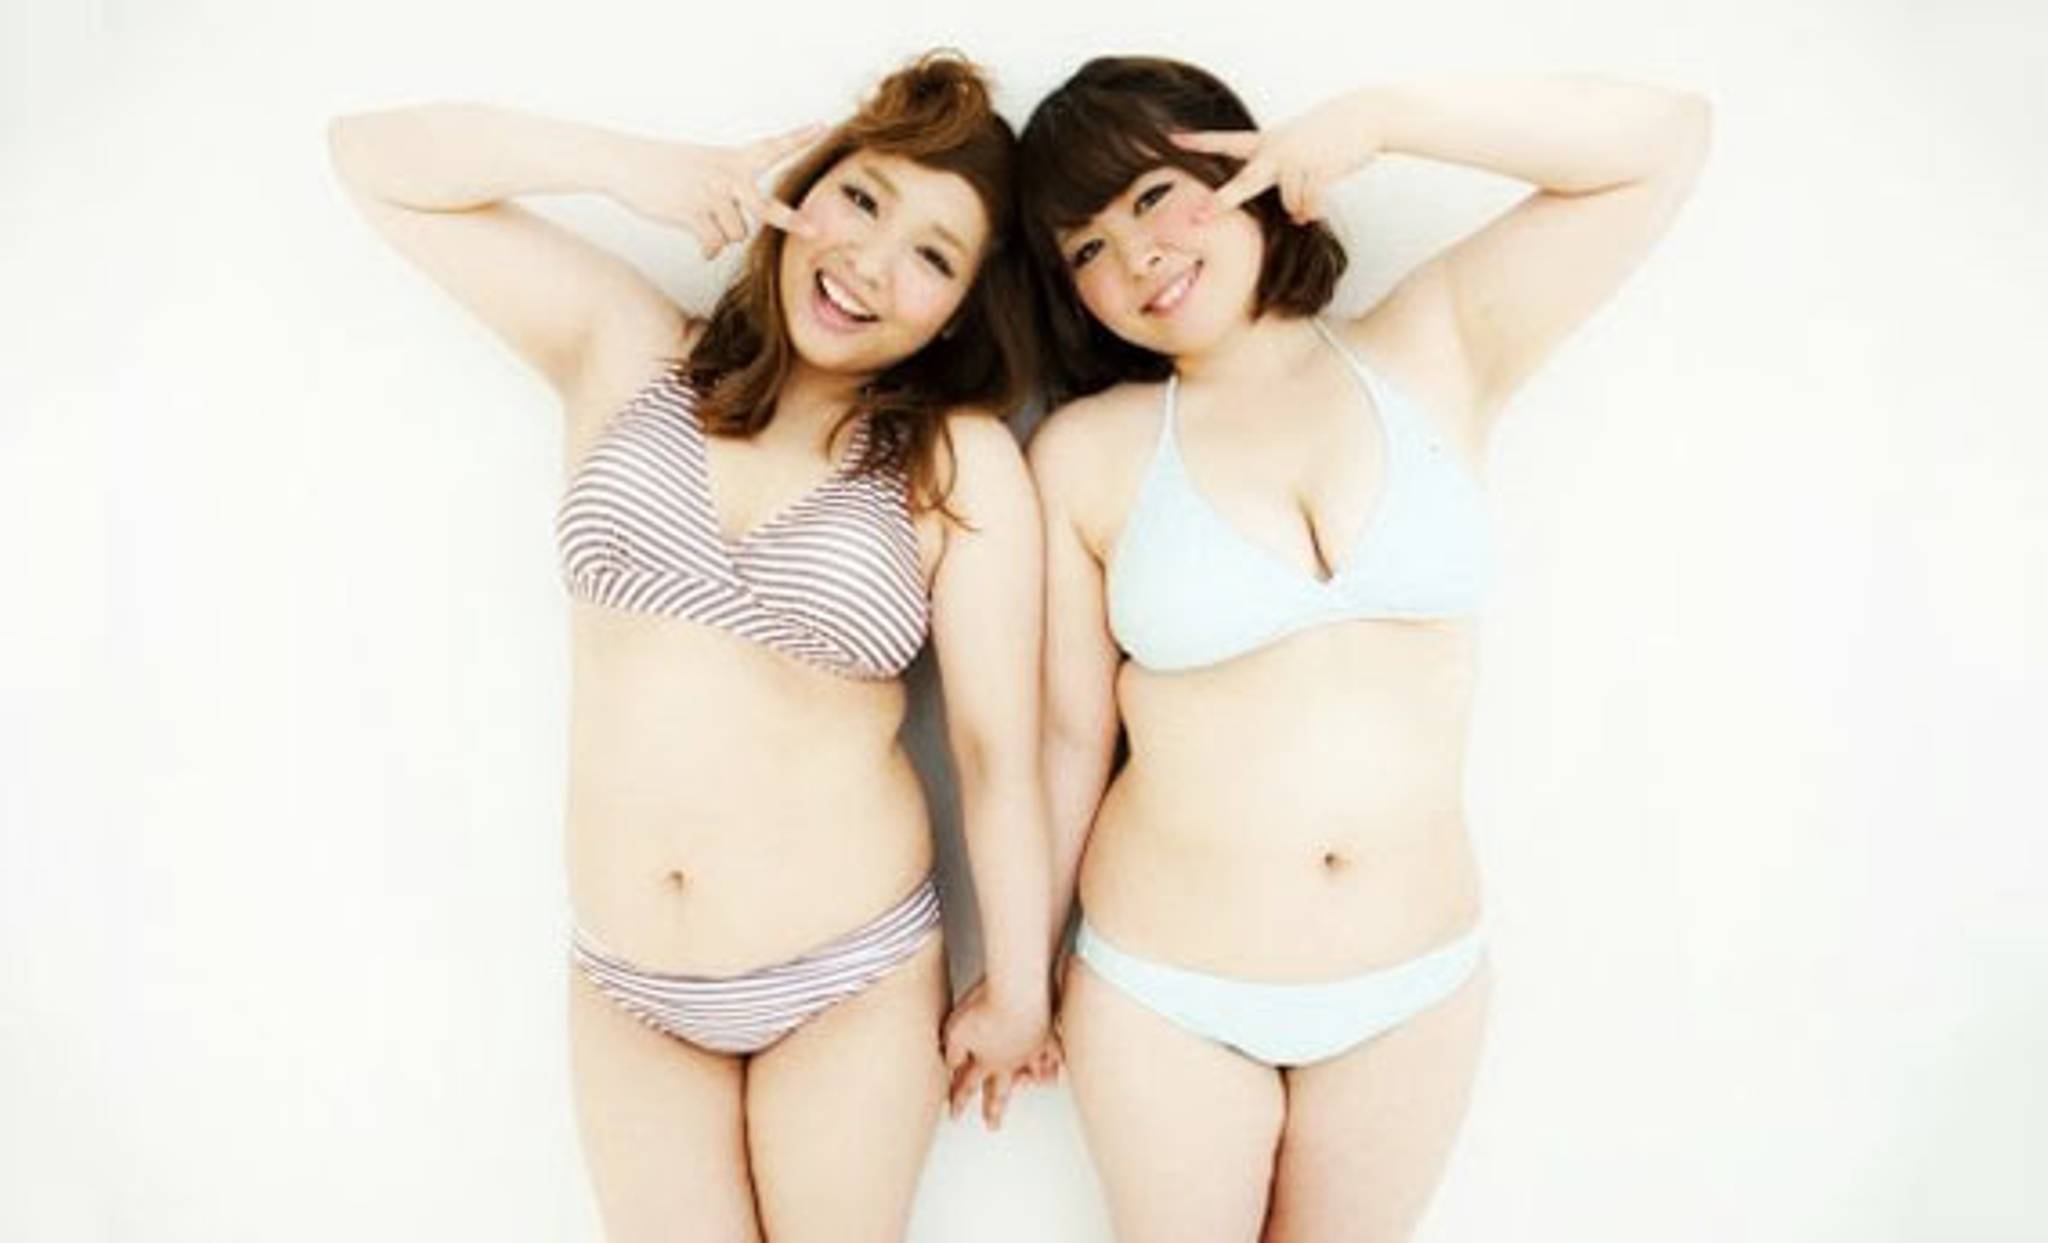 Japan celebrates 'marshmallow girls’